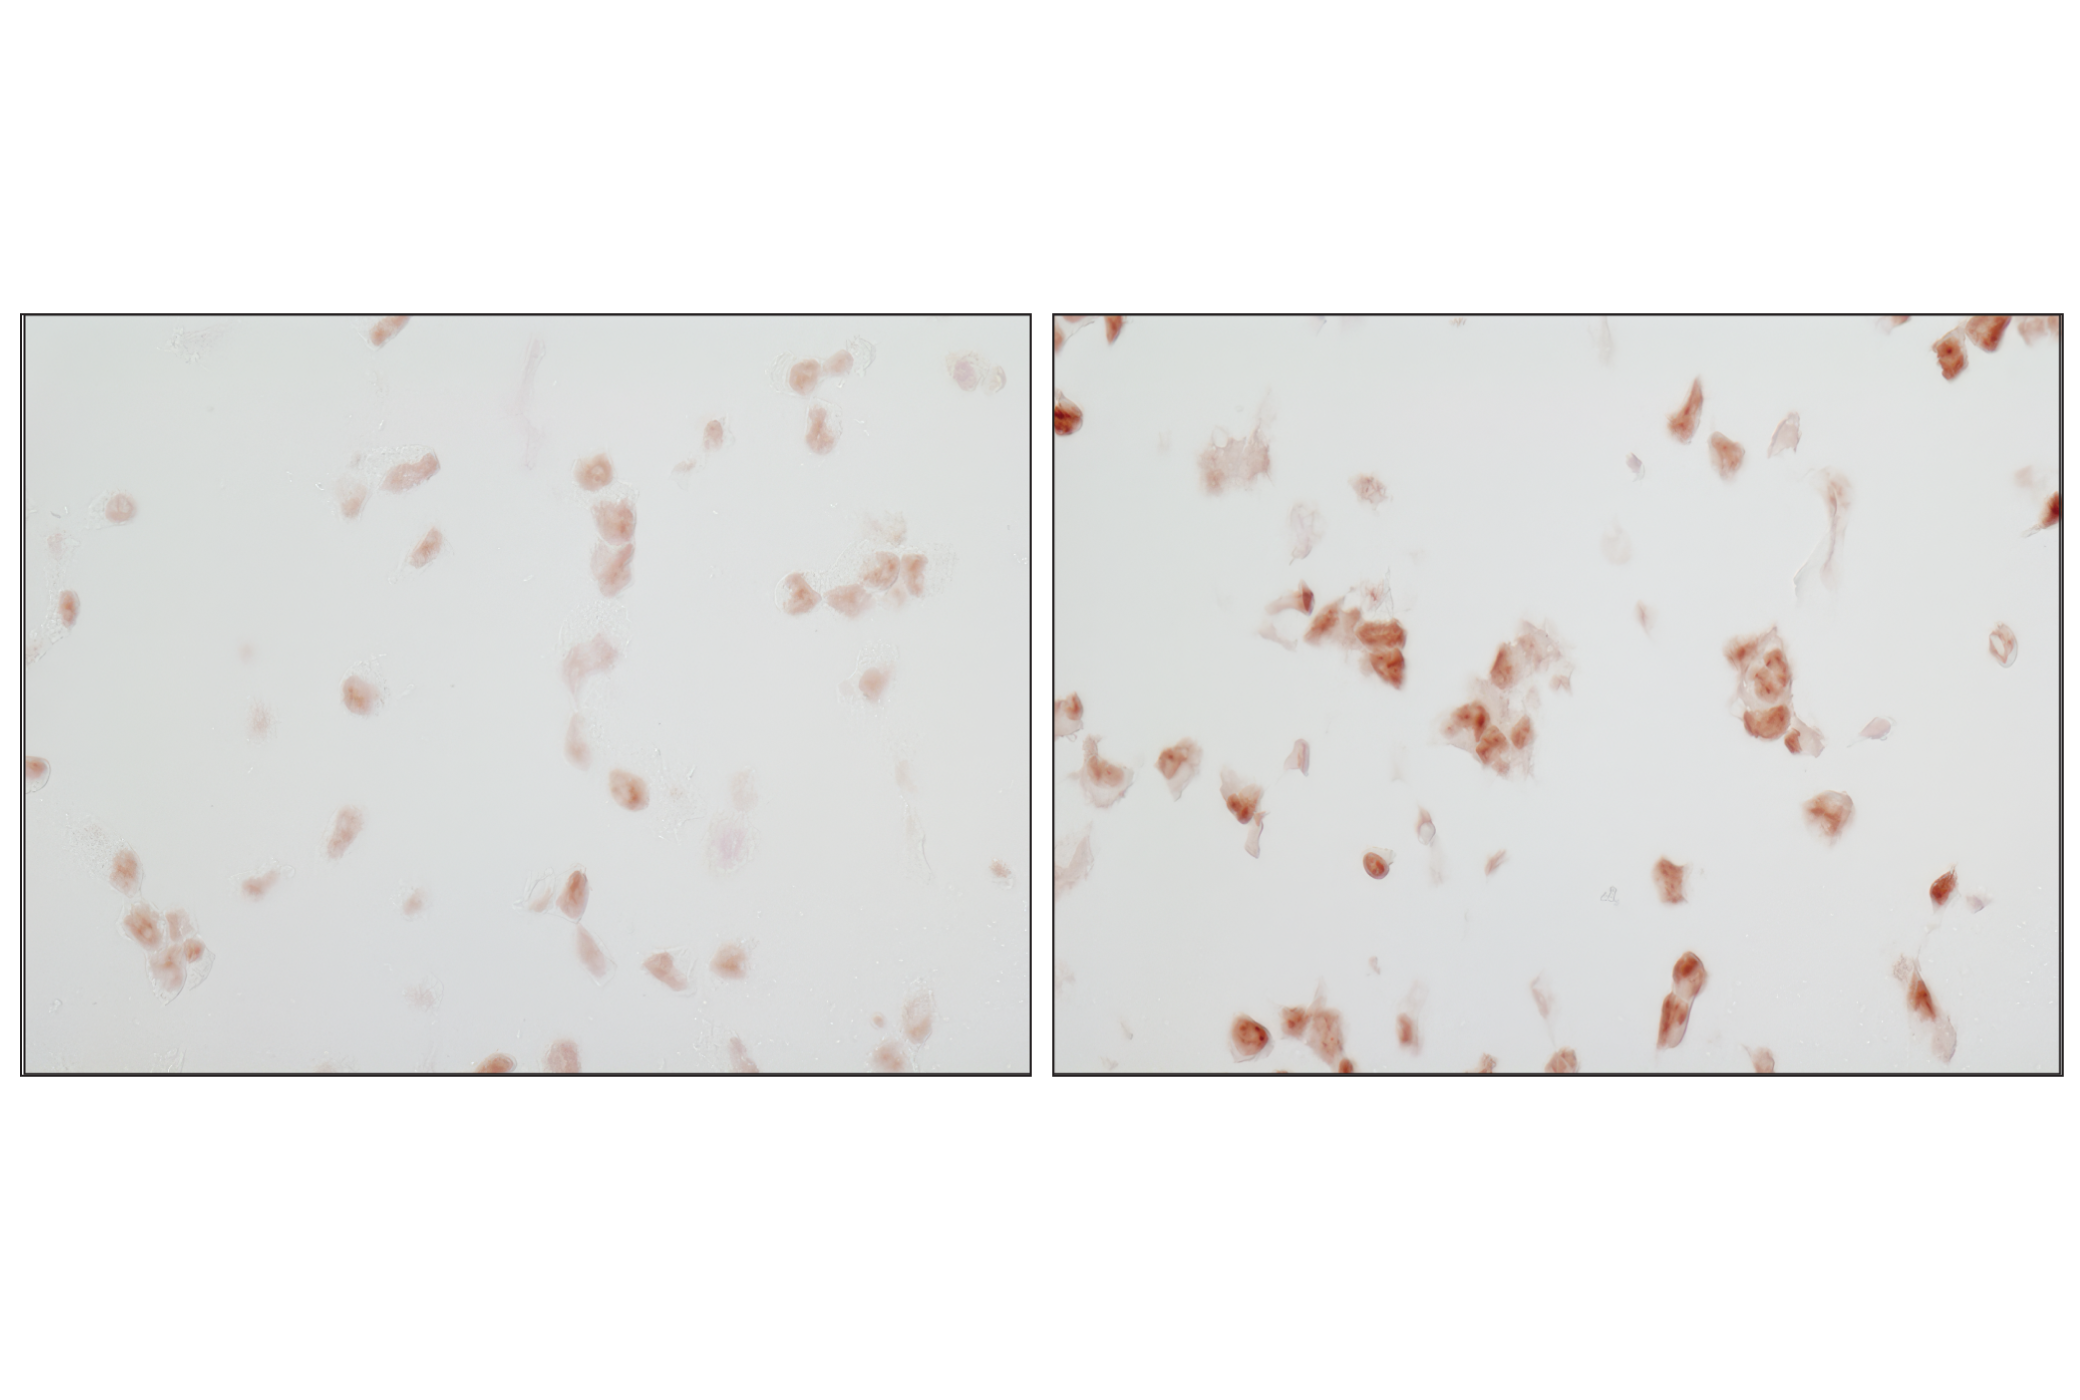  Image 7: PhosphoPlus® p38 MAPK (Thr180/Tyr182) Antibody Duet